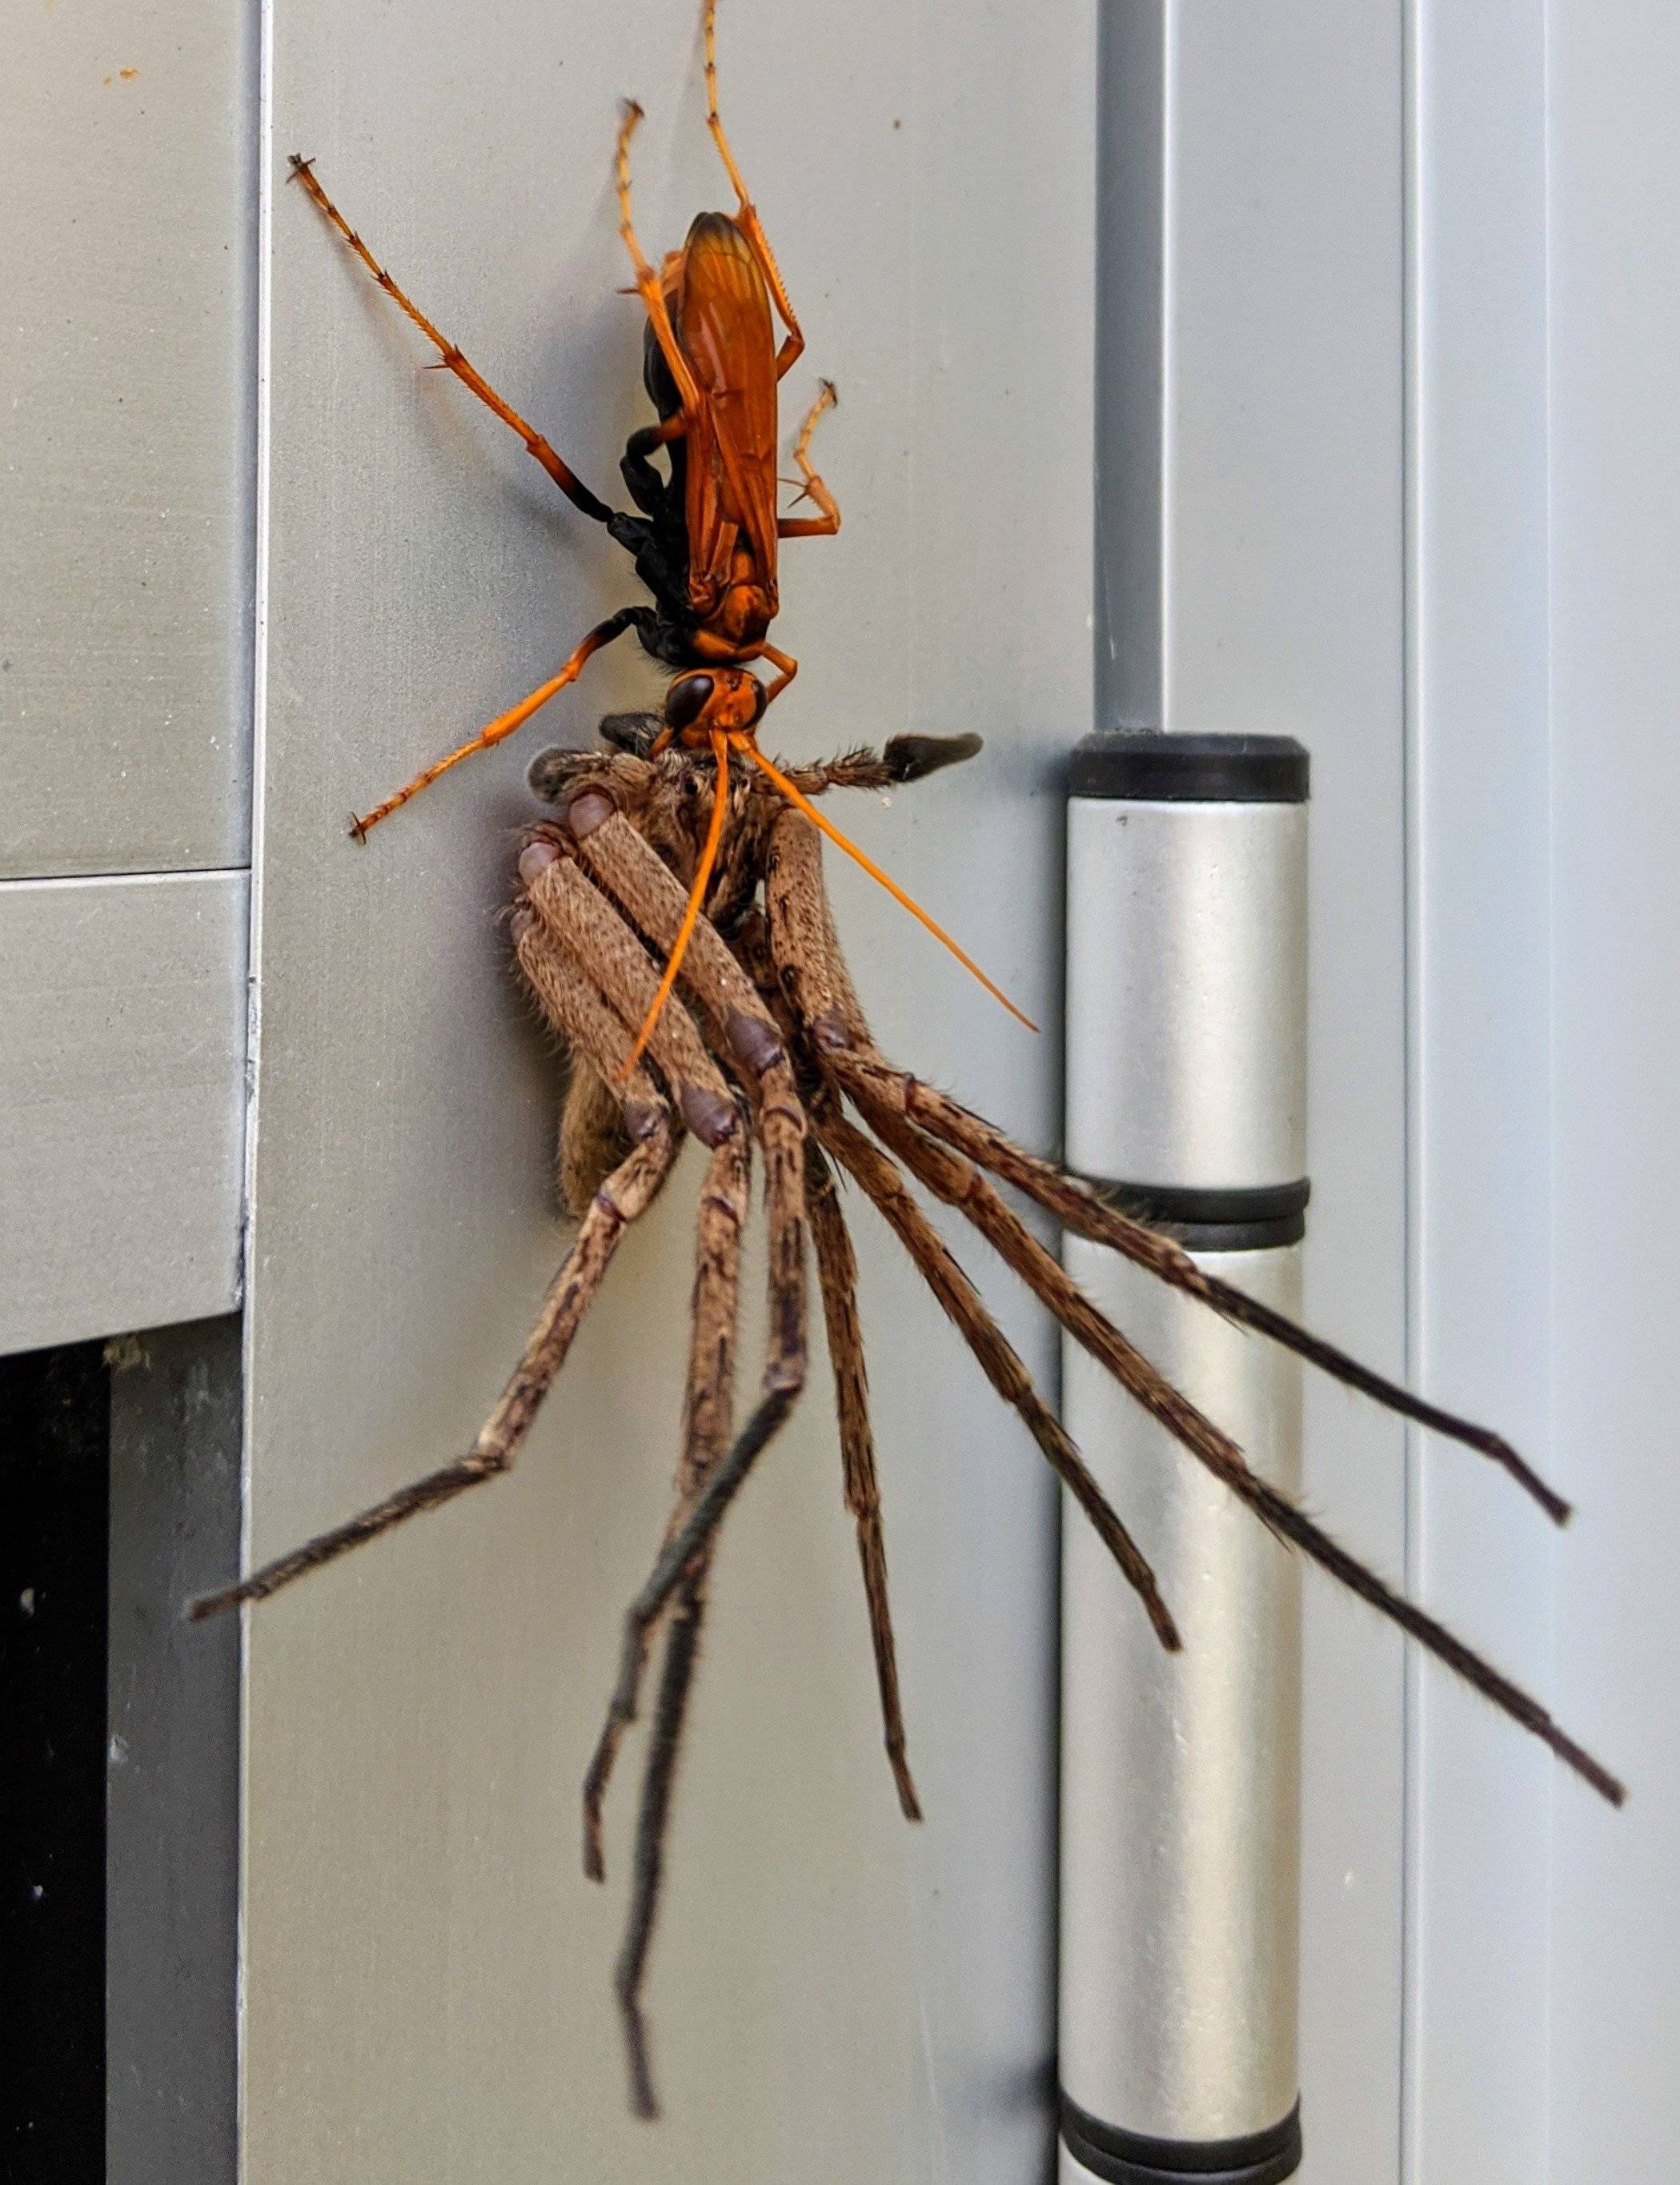 Сколько видов пауков в австралии – обзор самых необычных и опасных экземпляров | дезинфекция, дезинсекция, дератизация - информационный портал